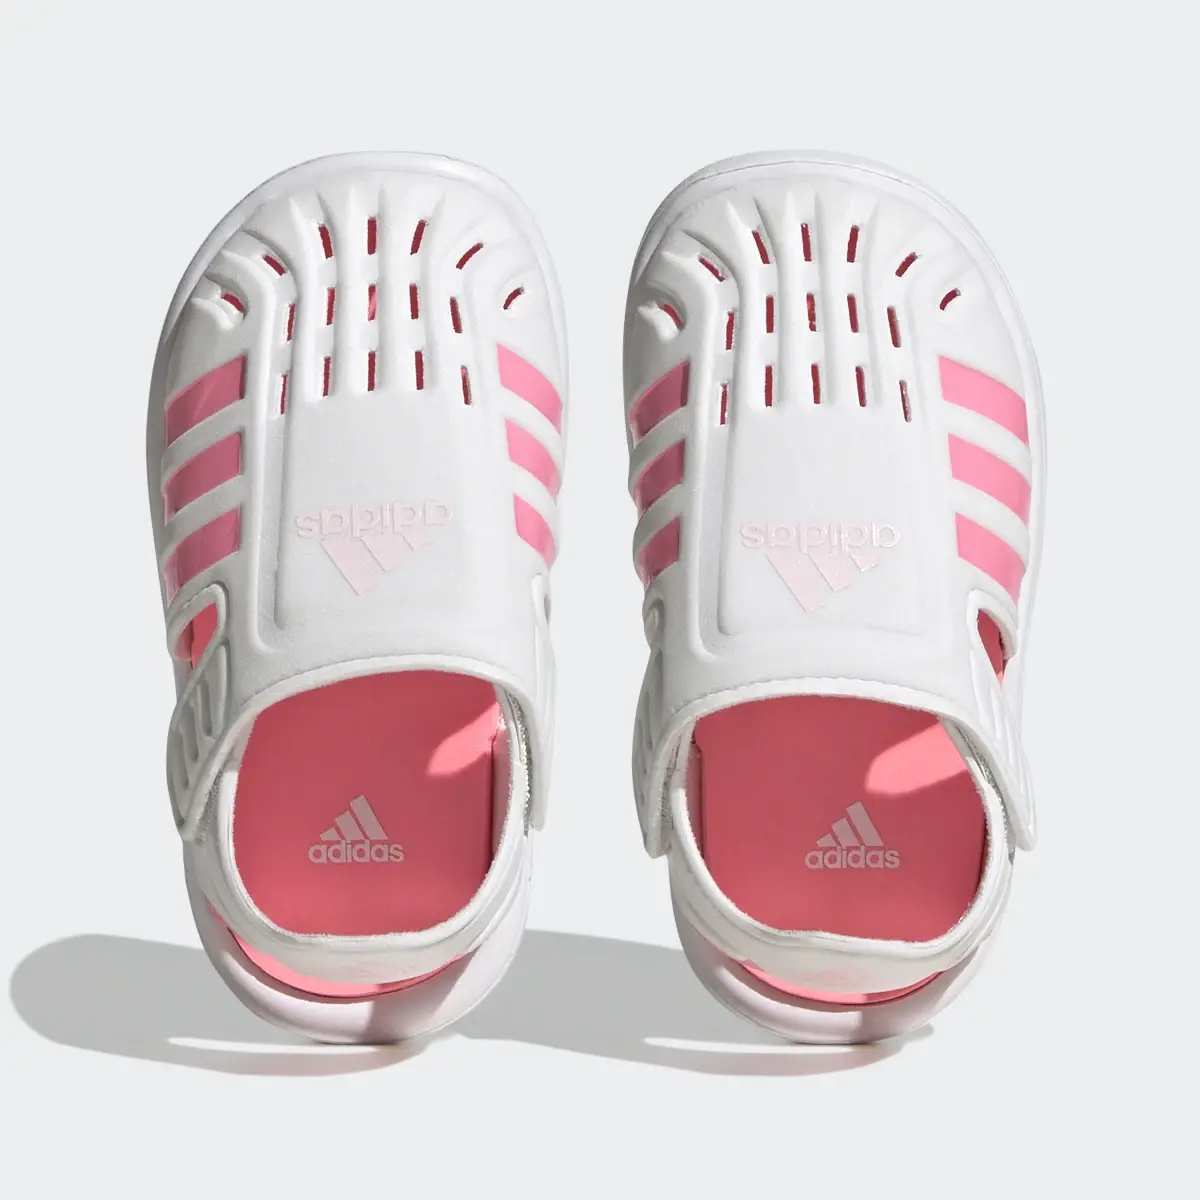 Adidas Sandálias de Verão com Biqueira Fechada. 3